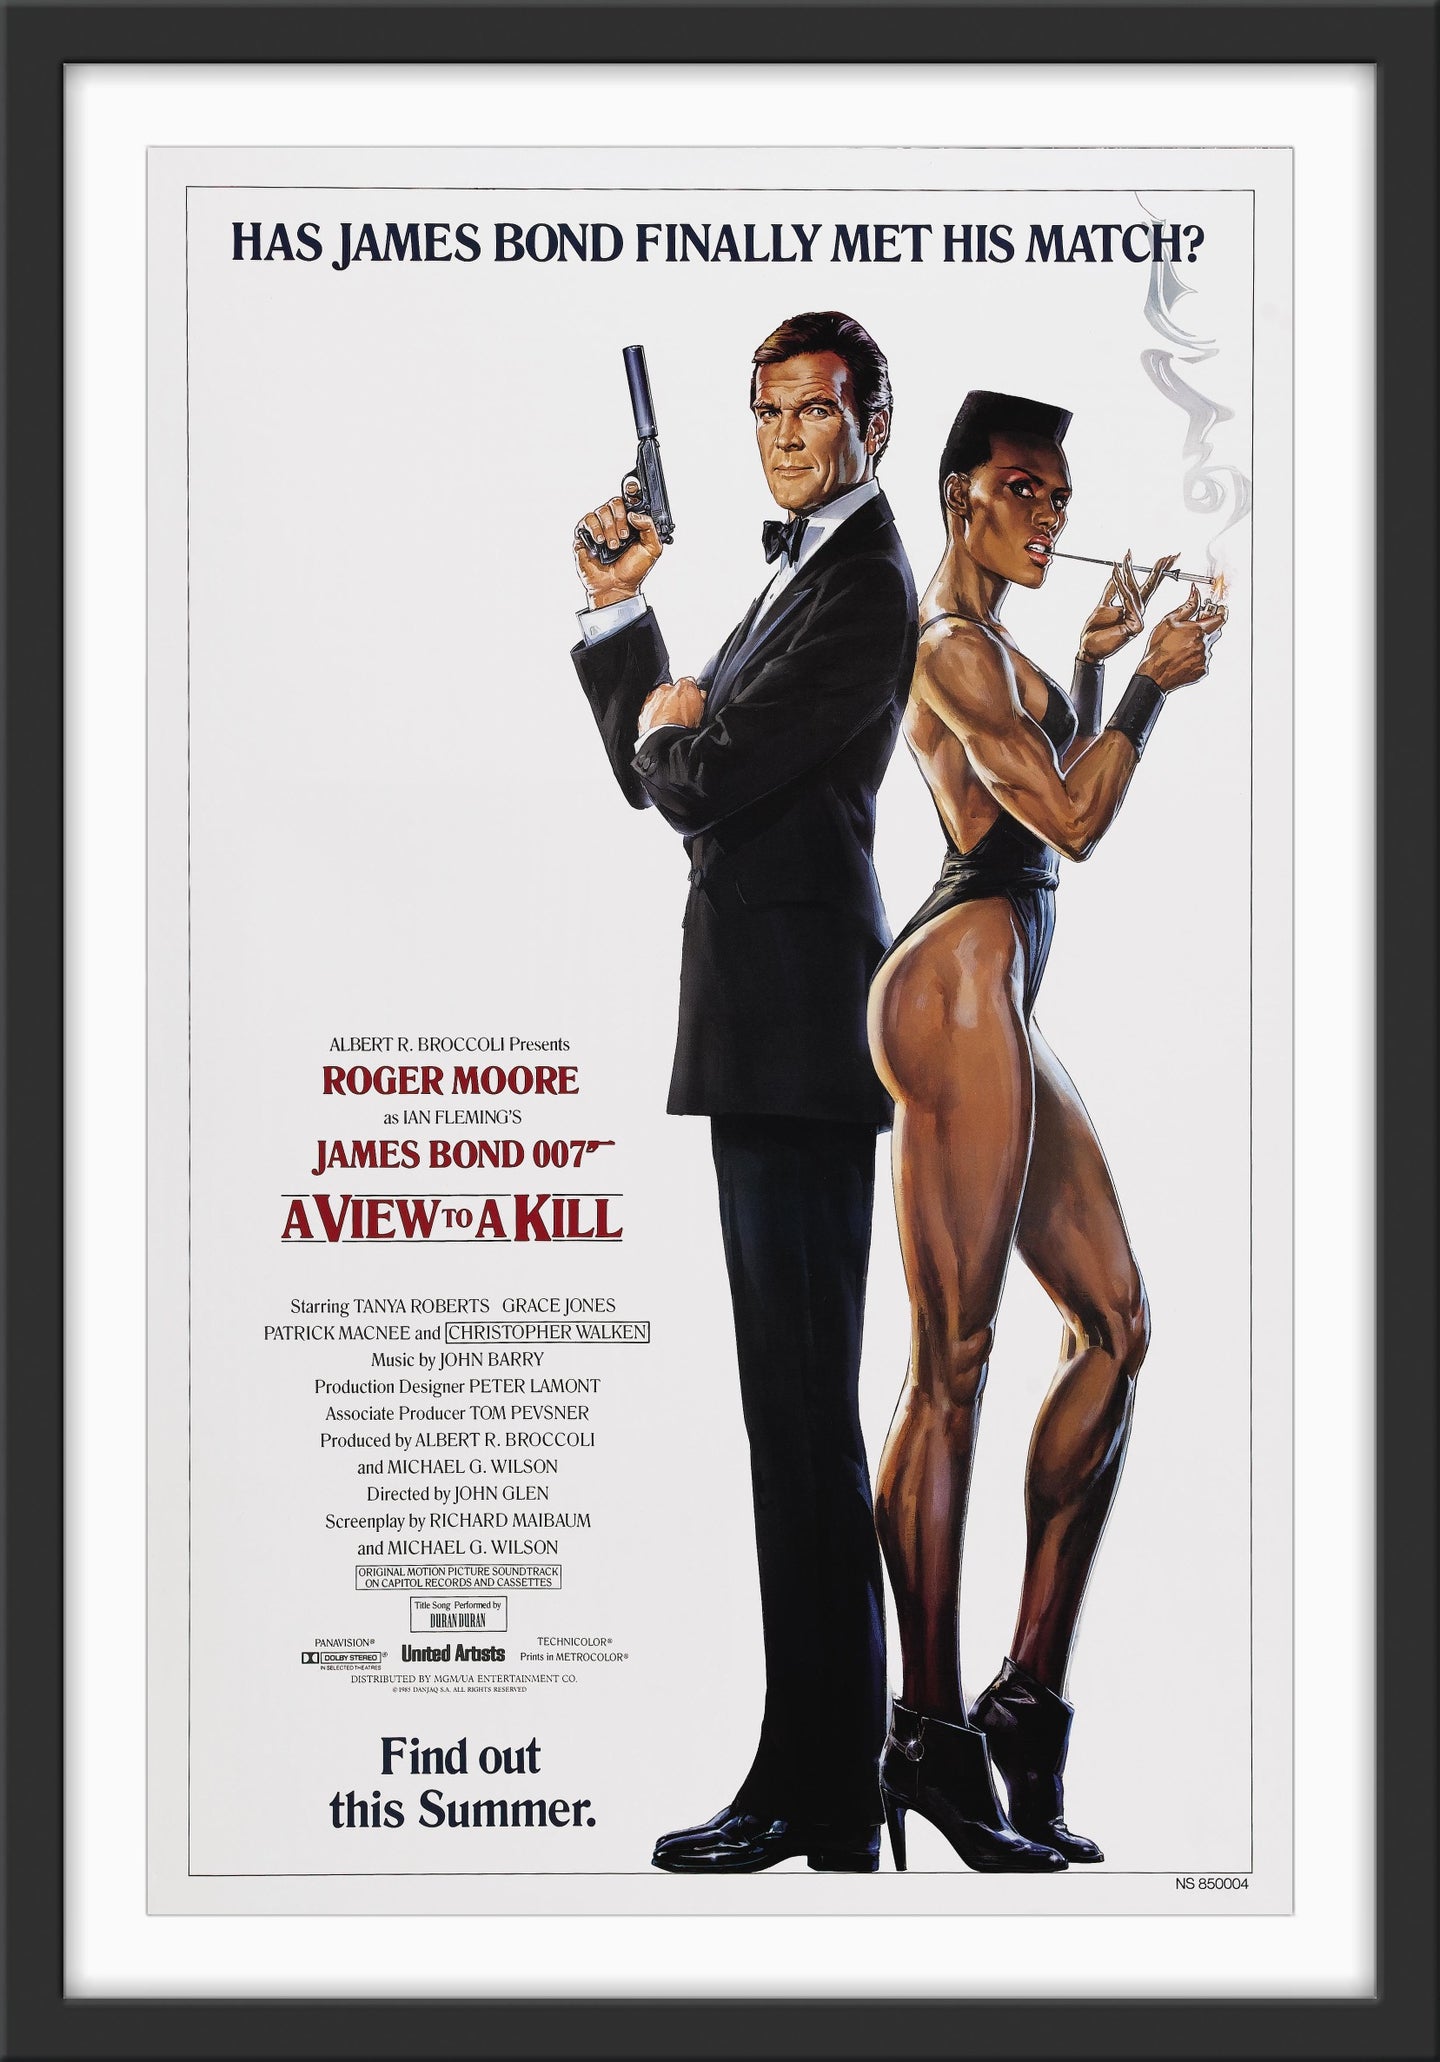 An original movie poster for the James Bond film A View To A KillAn original movie poster for the James Bond film A View To A Kill